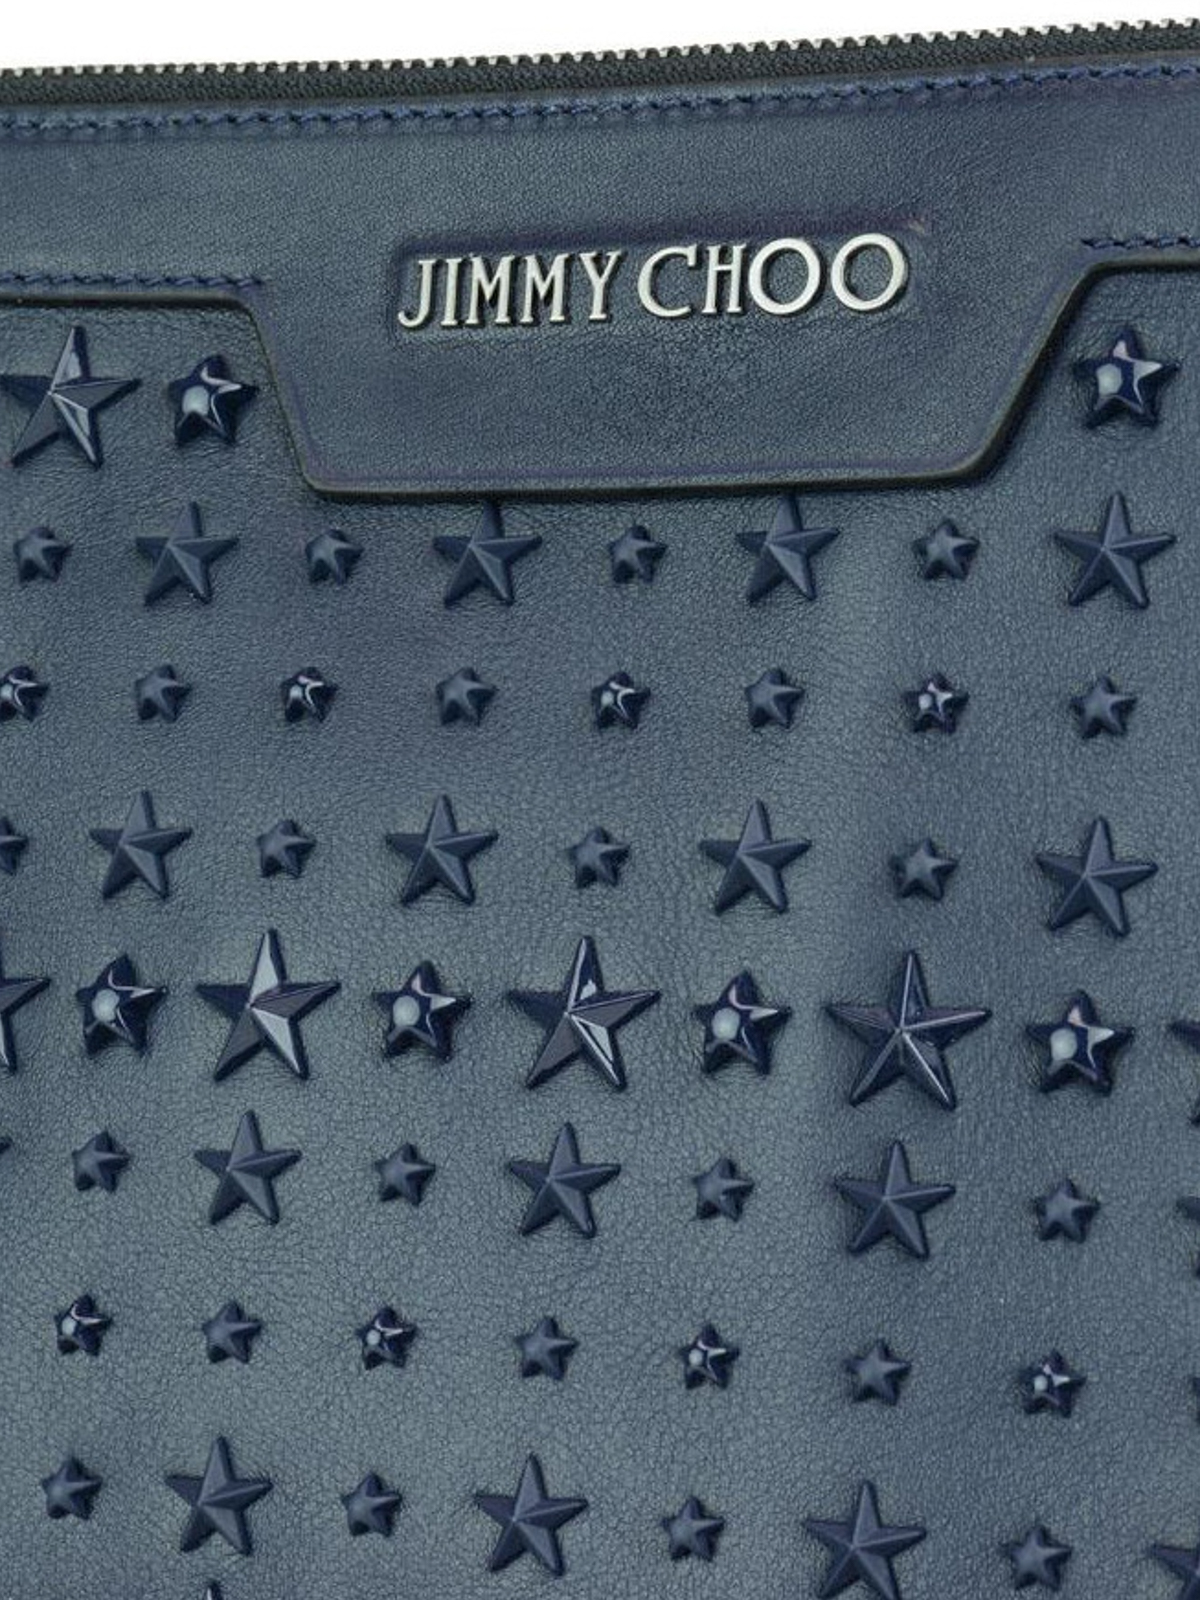 Jimmy Choo Luxury Bags For Men Clutch Derek Jimmy Choo Blue With